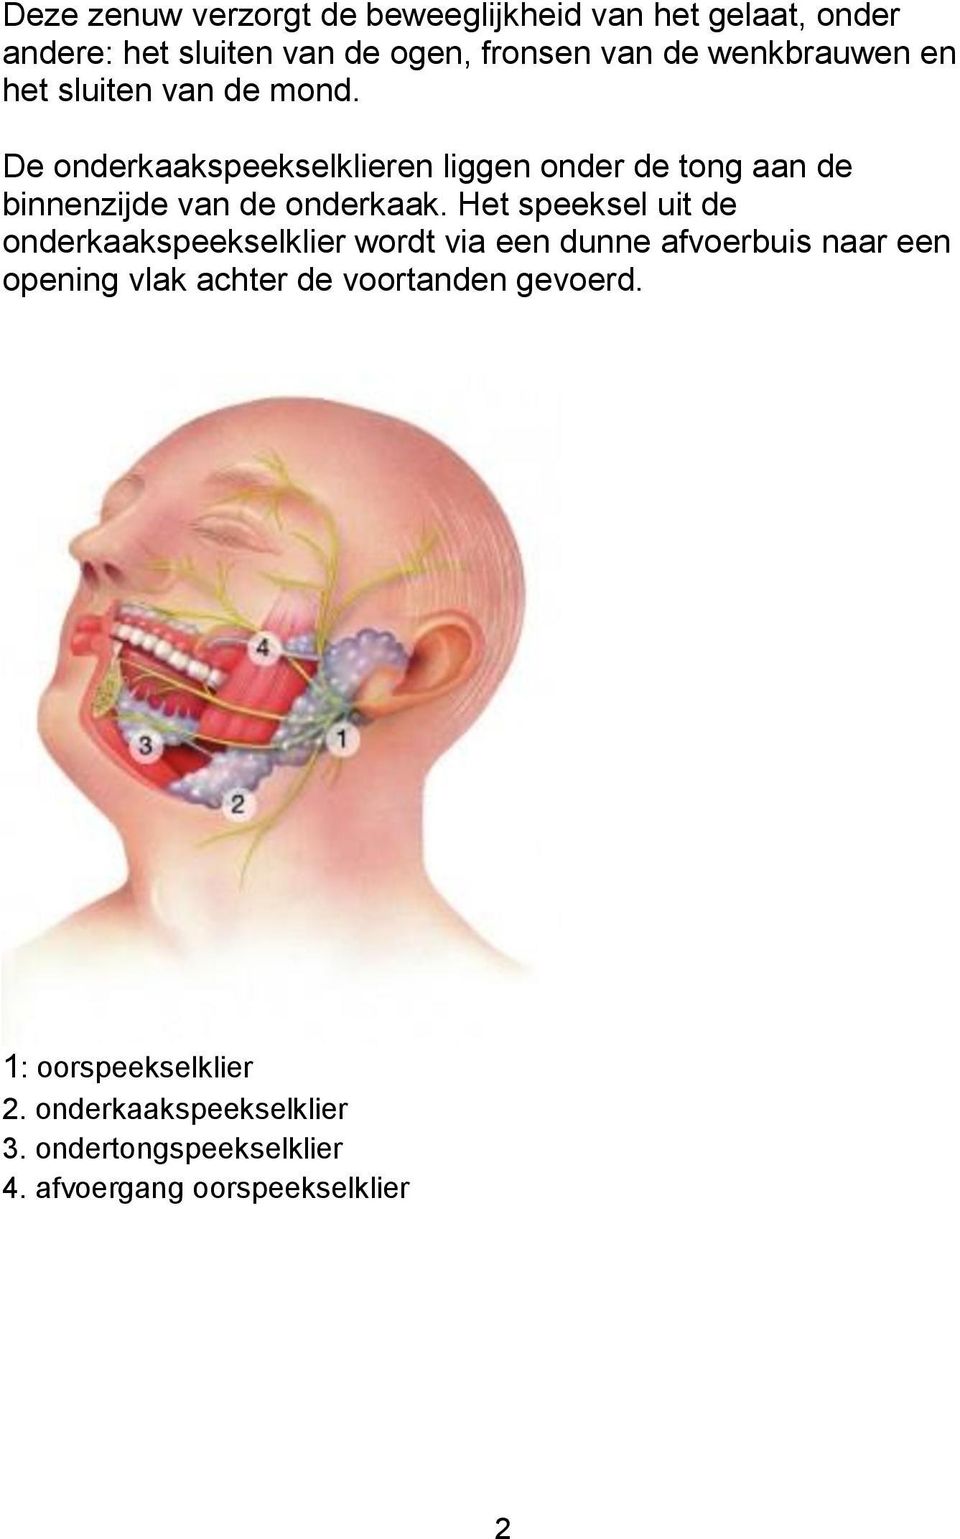 De onderkaakspeekselklieren liggen onder de tong aan de binnenzijde van de onderkaak.